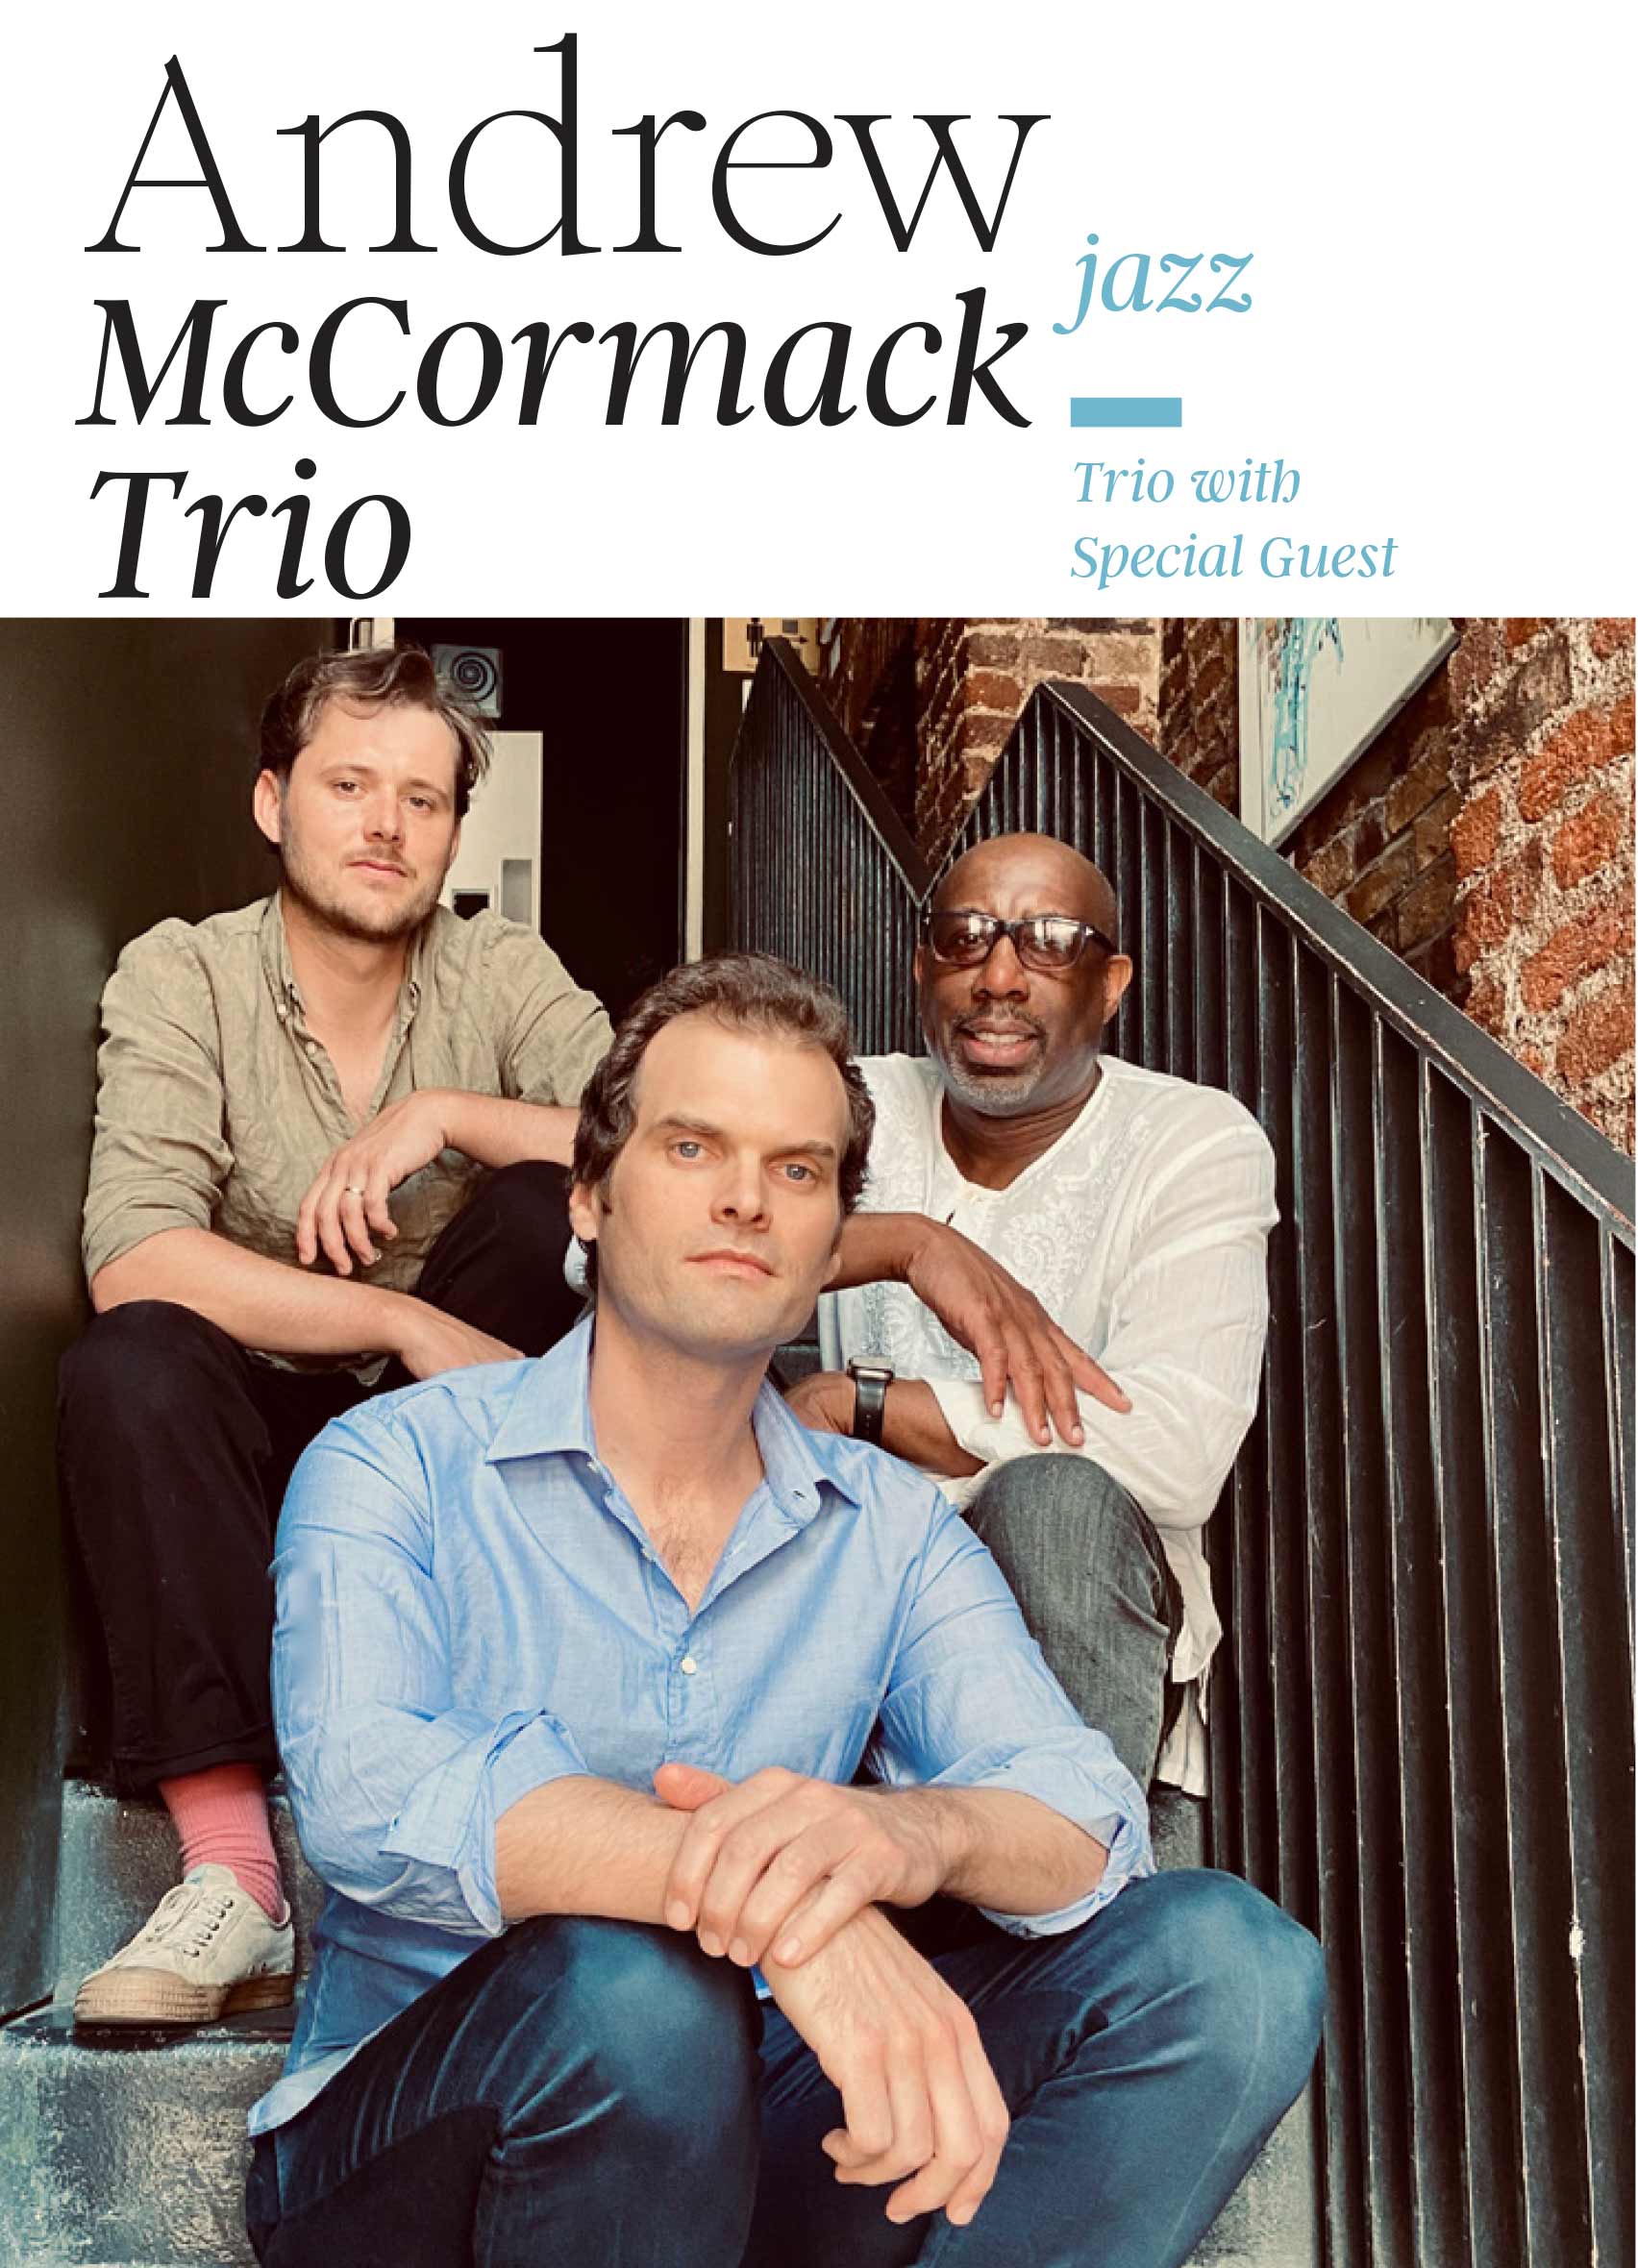 Andrew McCormack trio